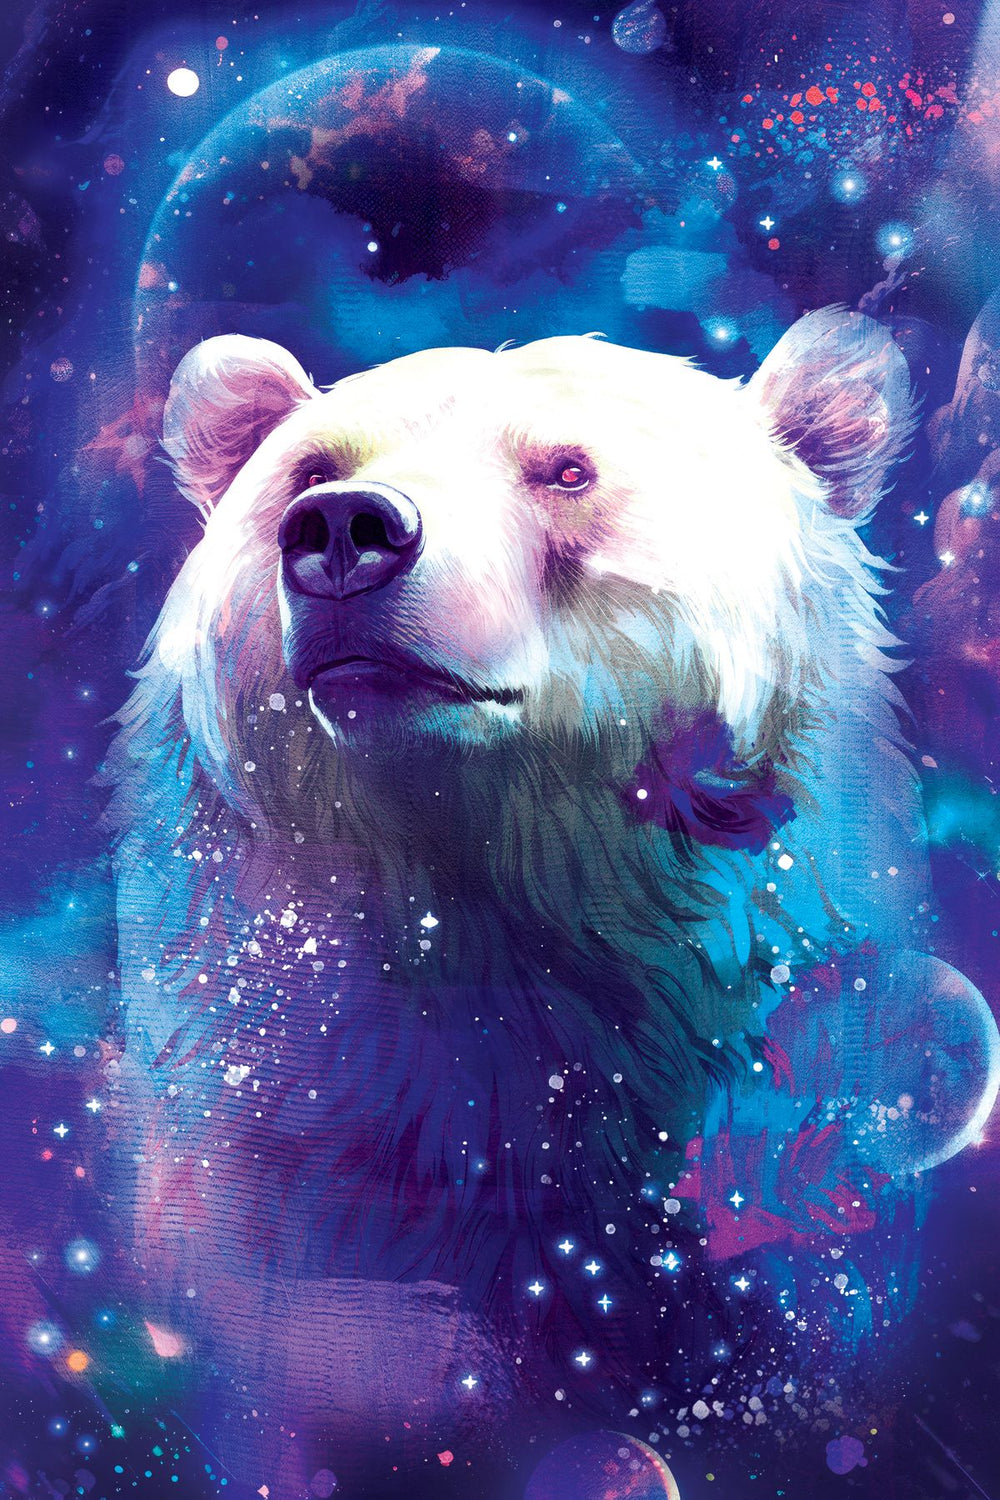 Cosmic Polar Bear